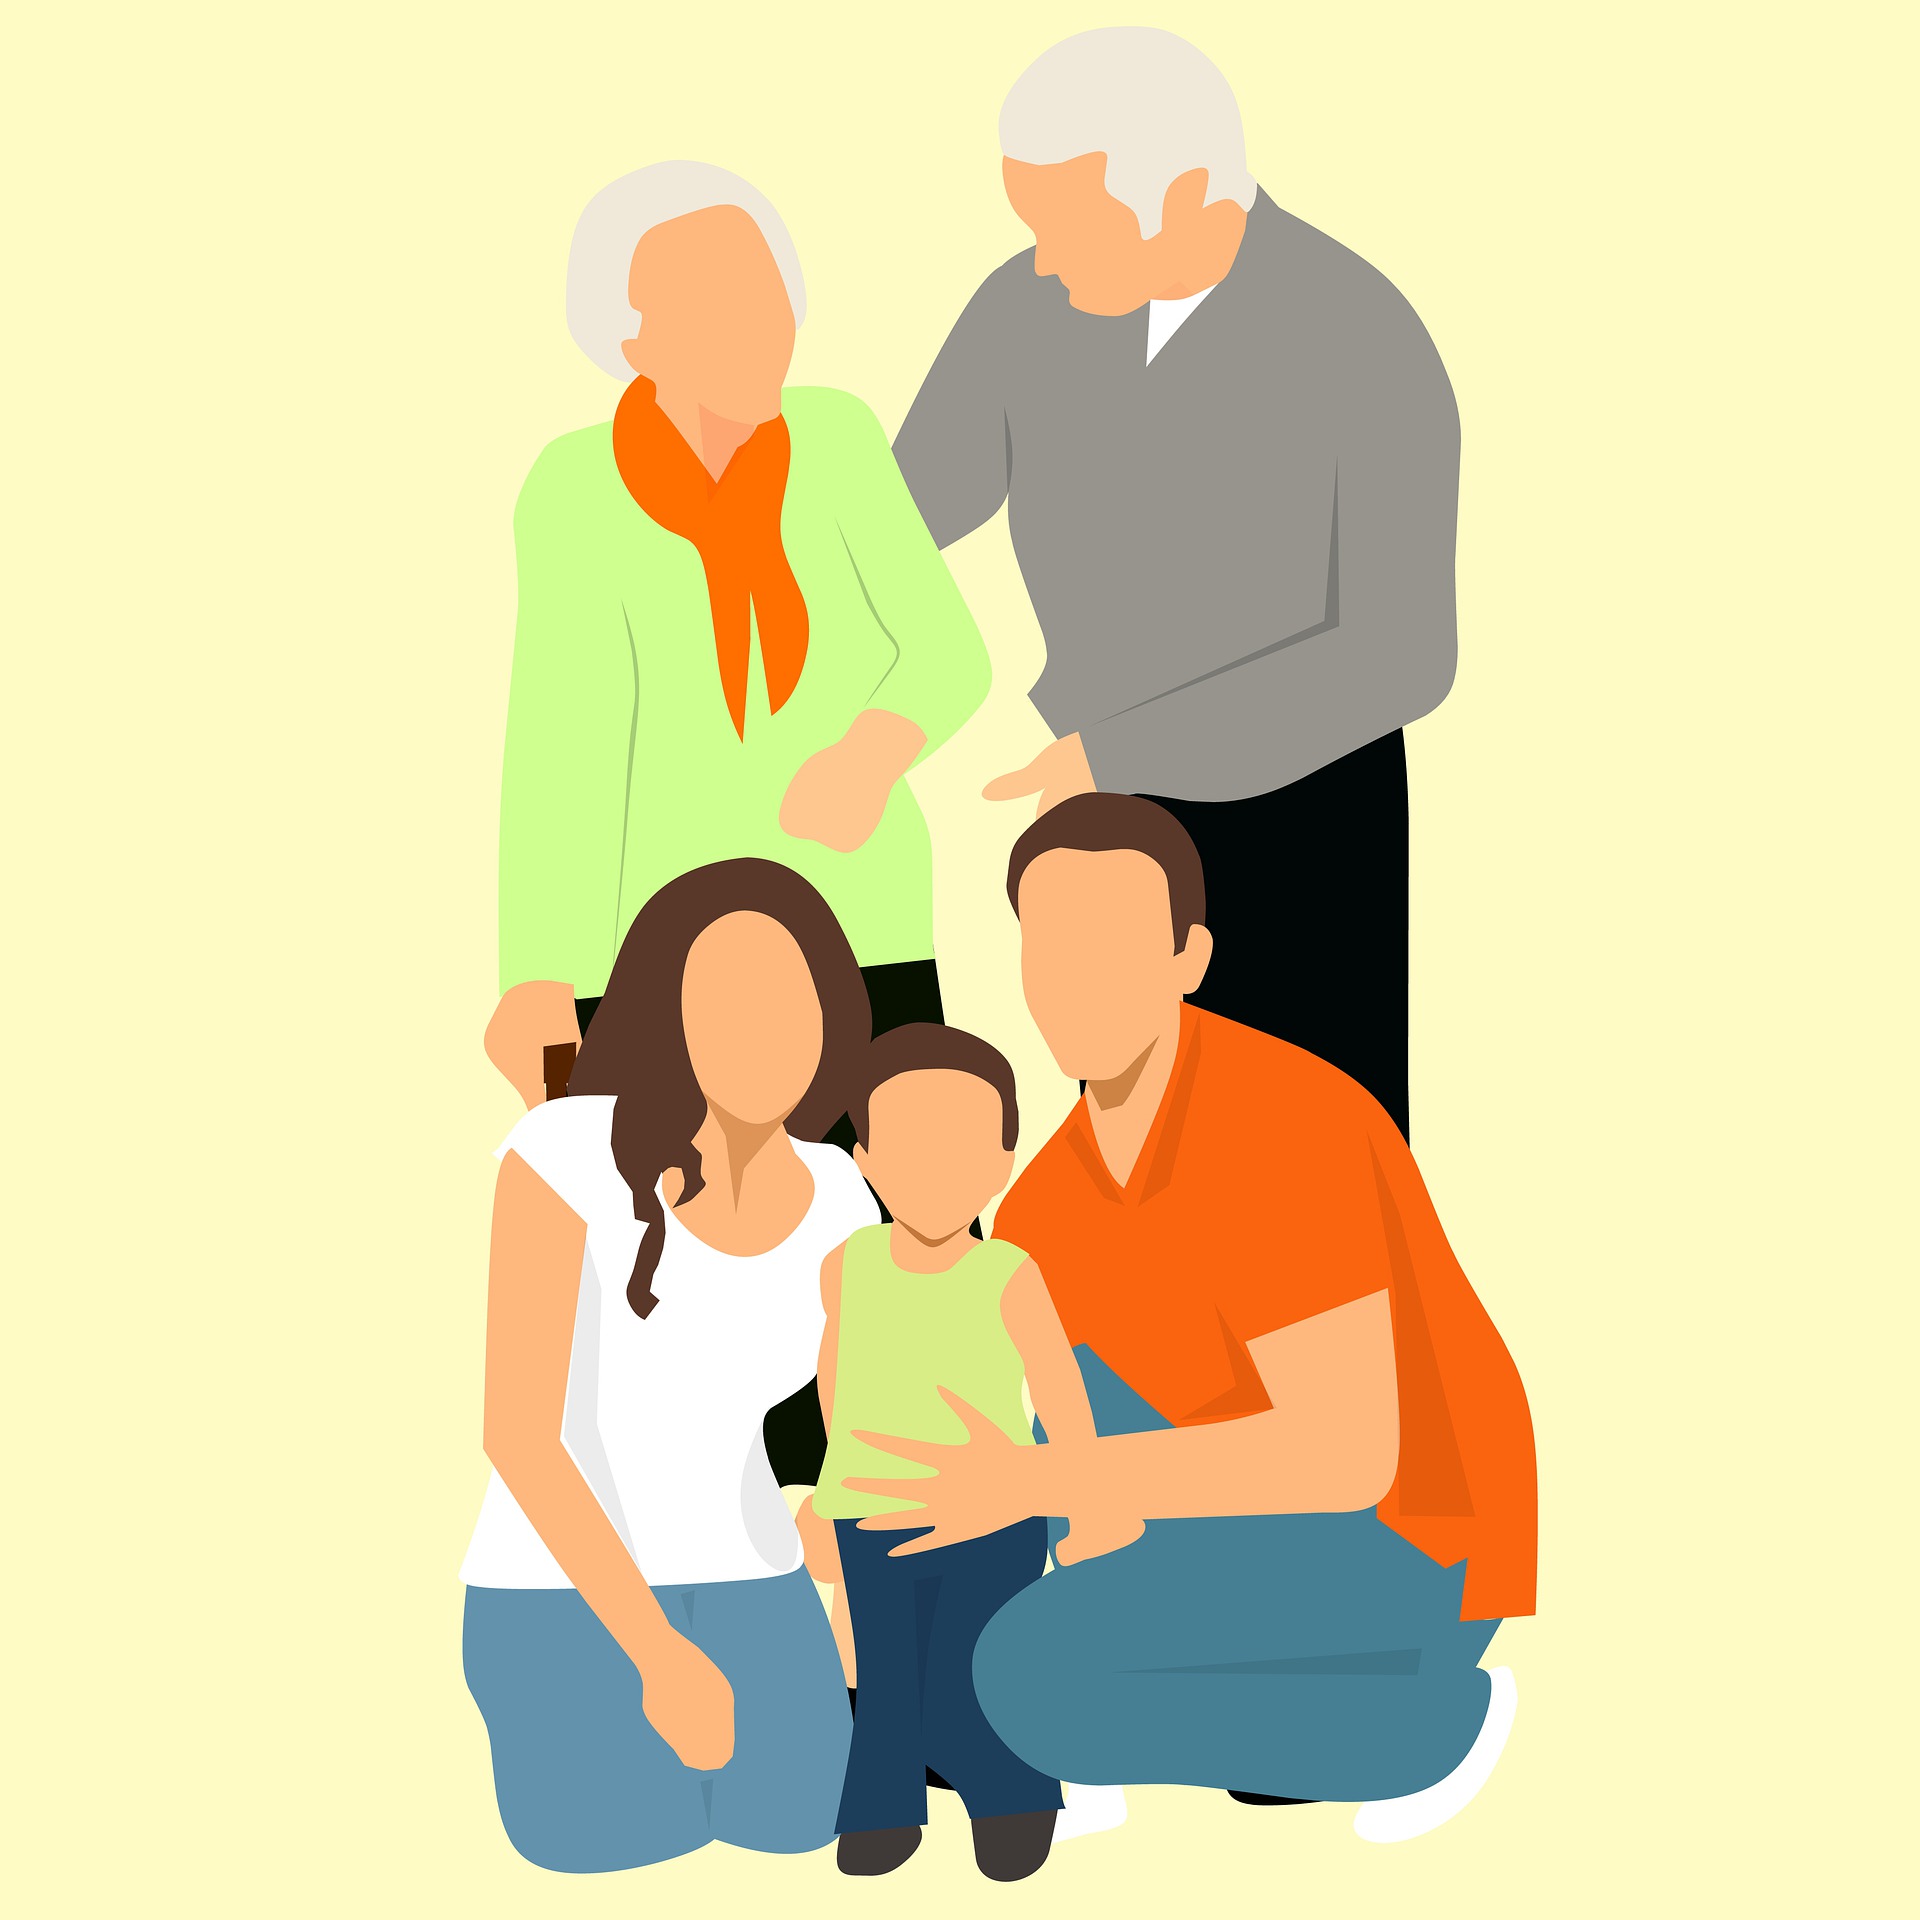 Gezin van herkomst is van belang in gezinstherapie. Hier is een tekening van opa en oma, met voor hen een vader en moeder (kinderen) die weer hun kind vasthebben.